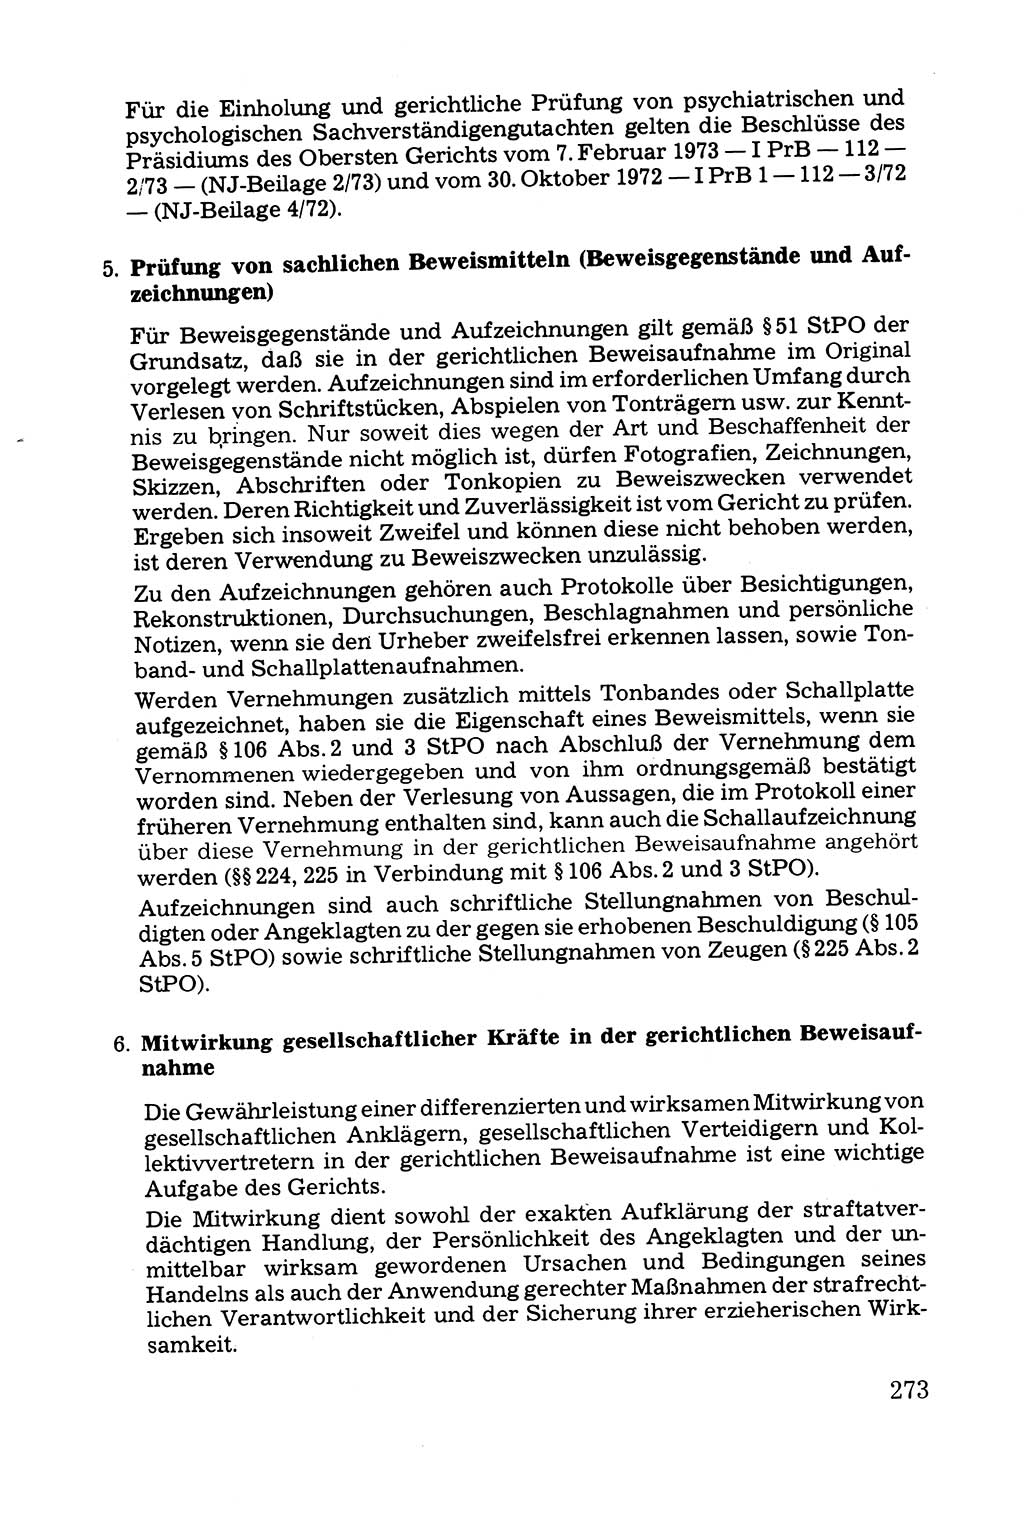 Grundfragen der Beweisführung im Ermittlungsverfahren [Deutsche Demokratische Republik (DDR)] 1980, Seite 273 (Bws.-Fhrg. EV DDR 1980, S. 273)